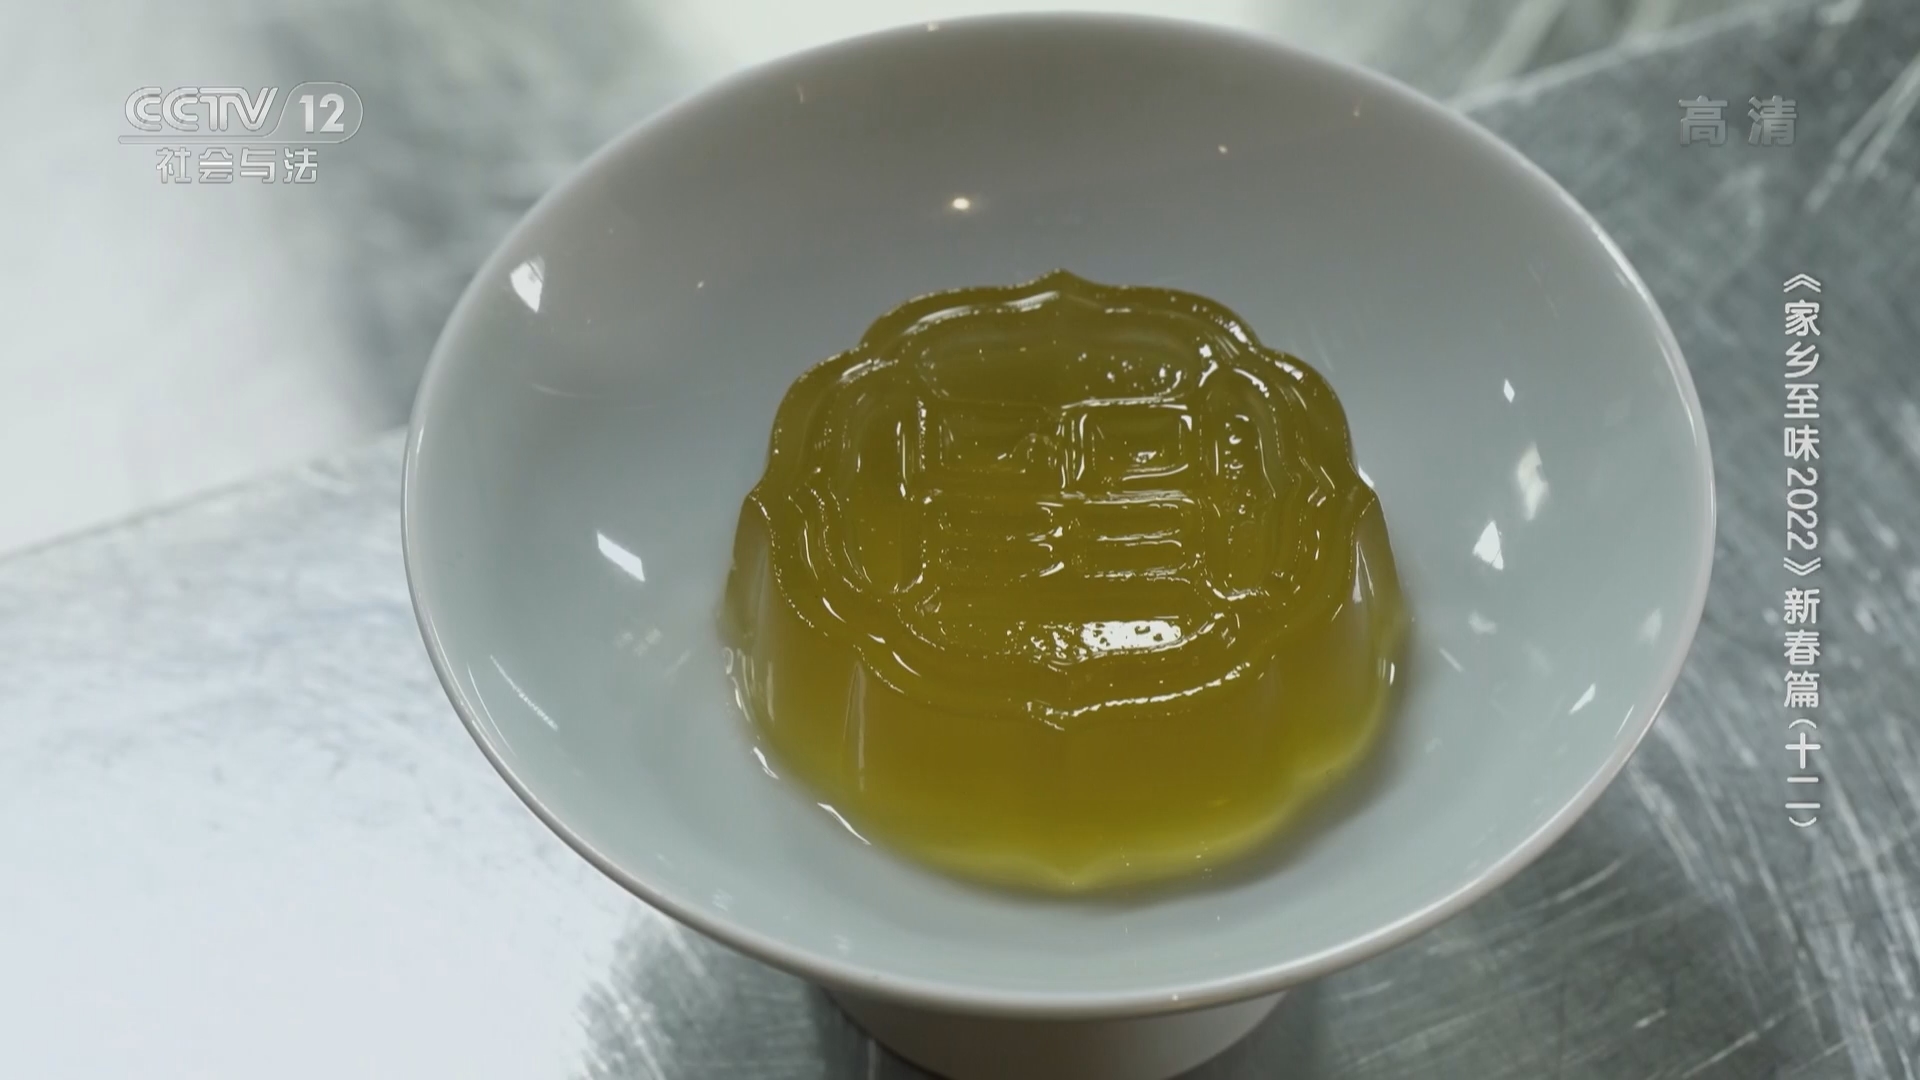 茶叶制成的特殊甜品——龙井茶冻